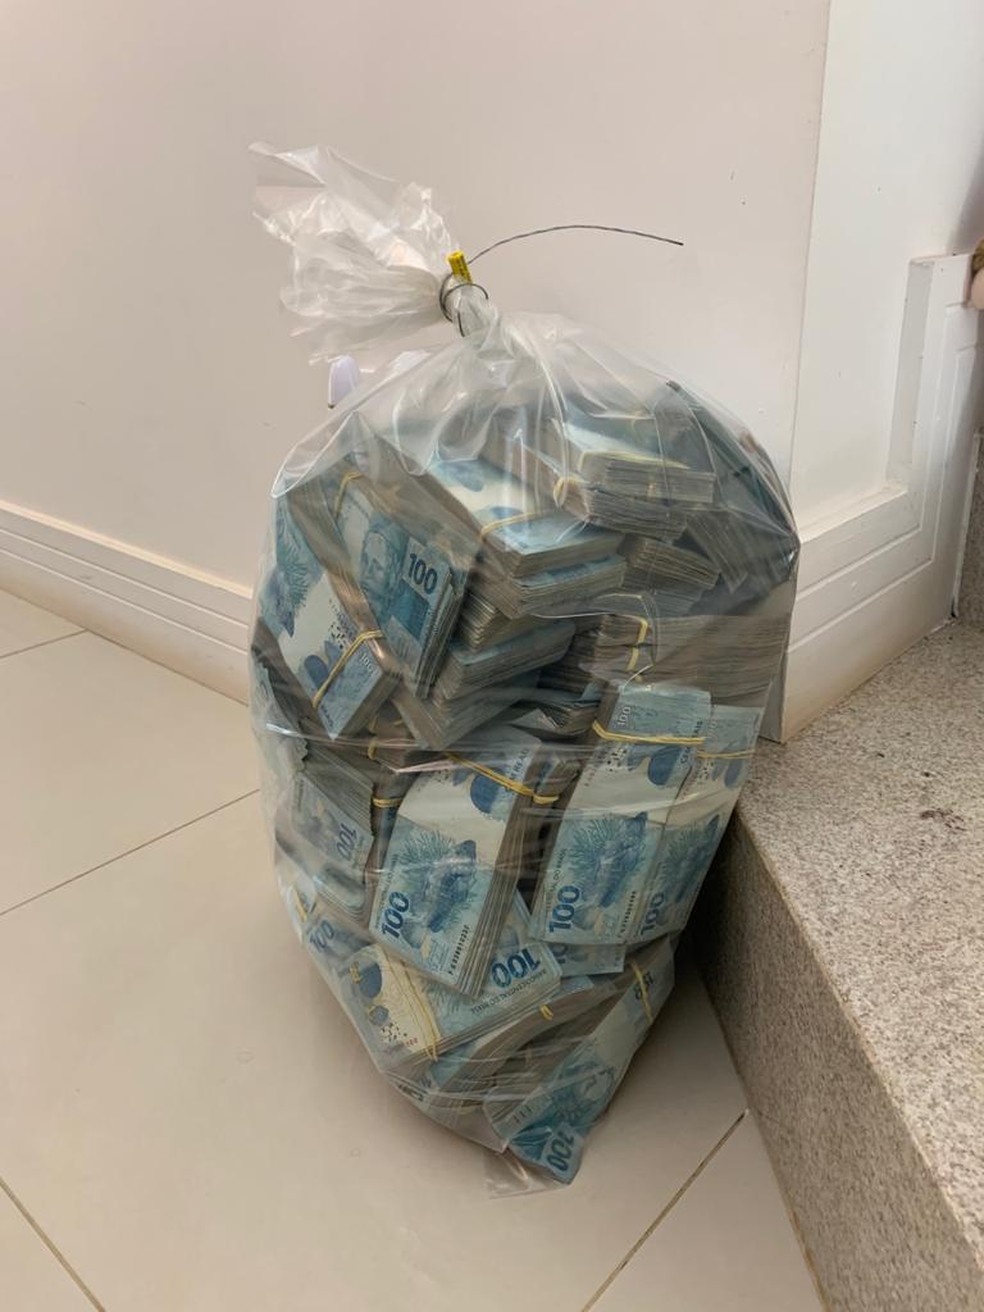 Dinheiro foi apreendido durante operação do Gaeco em Bauru  — Foto: Arquivo pessoal